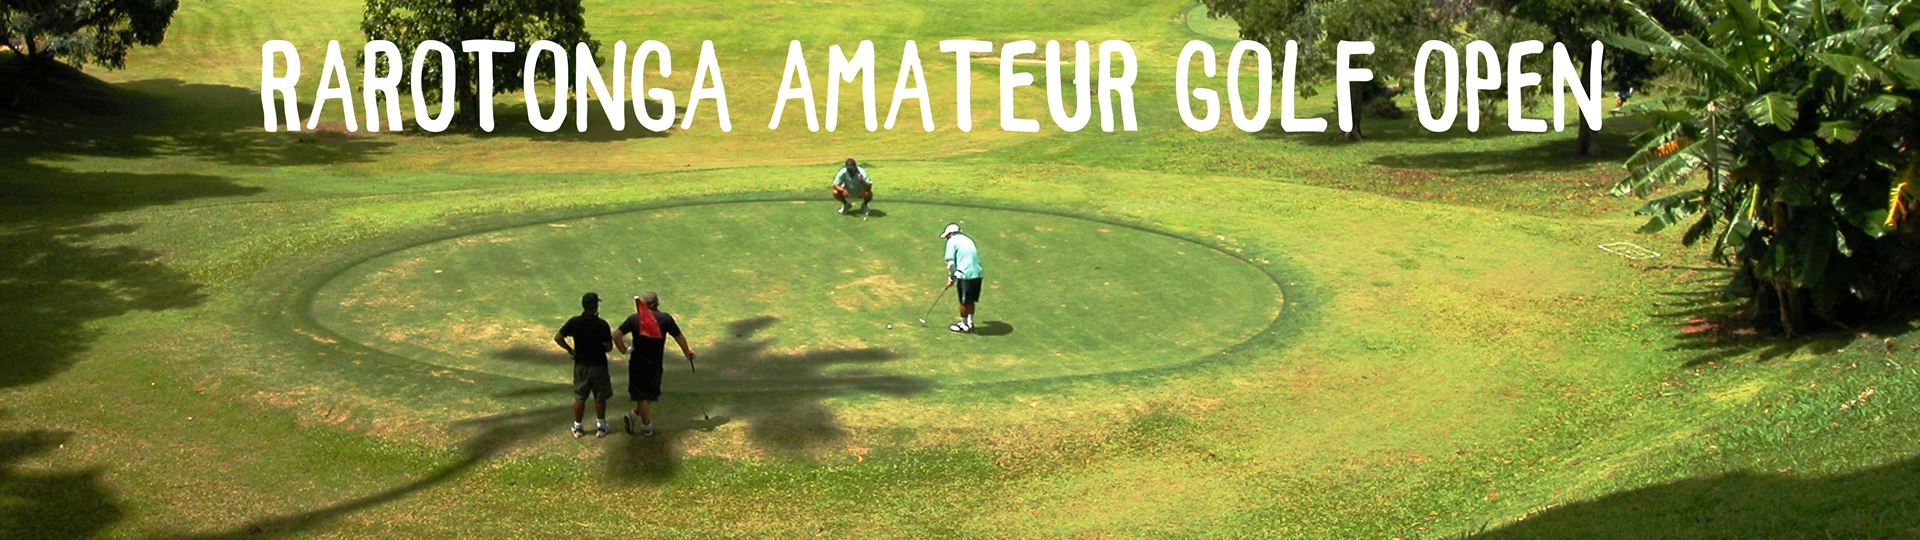 Rarotonga Amateur Golf Open